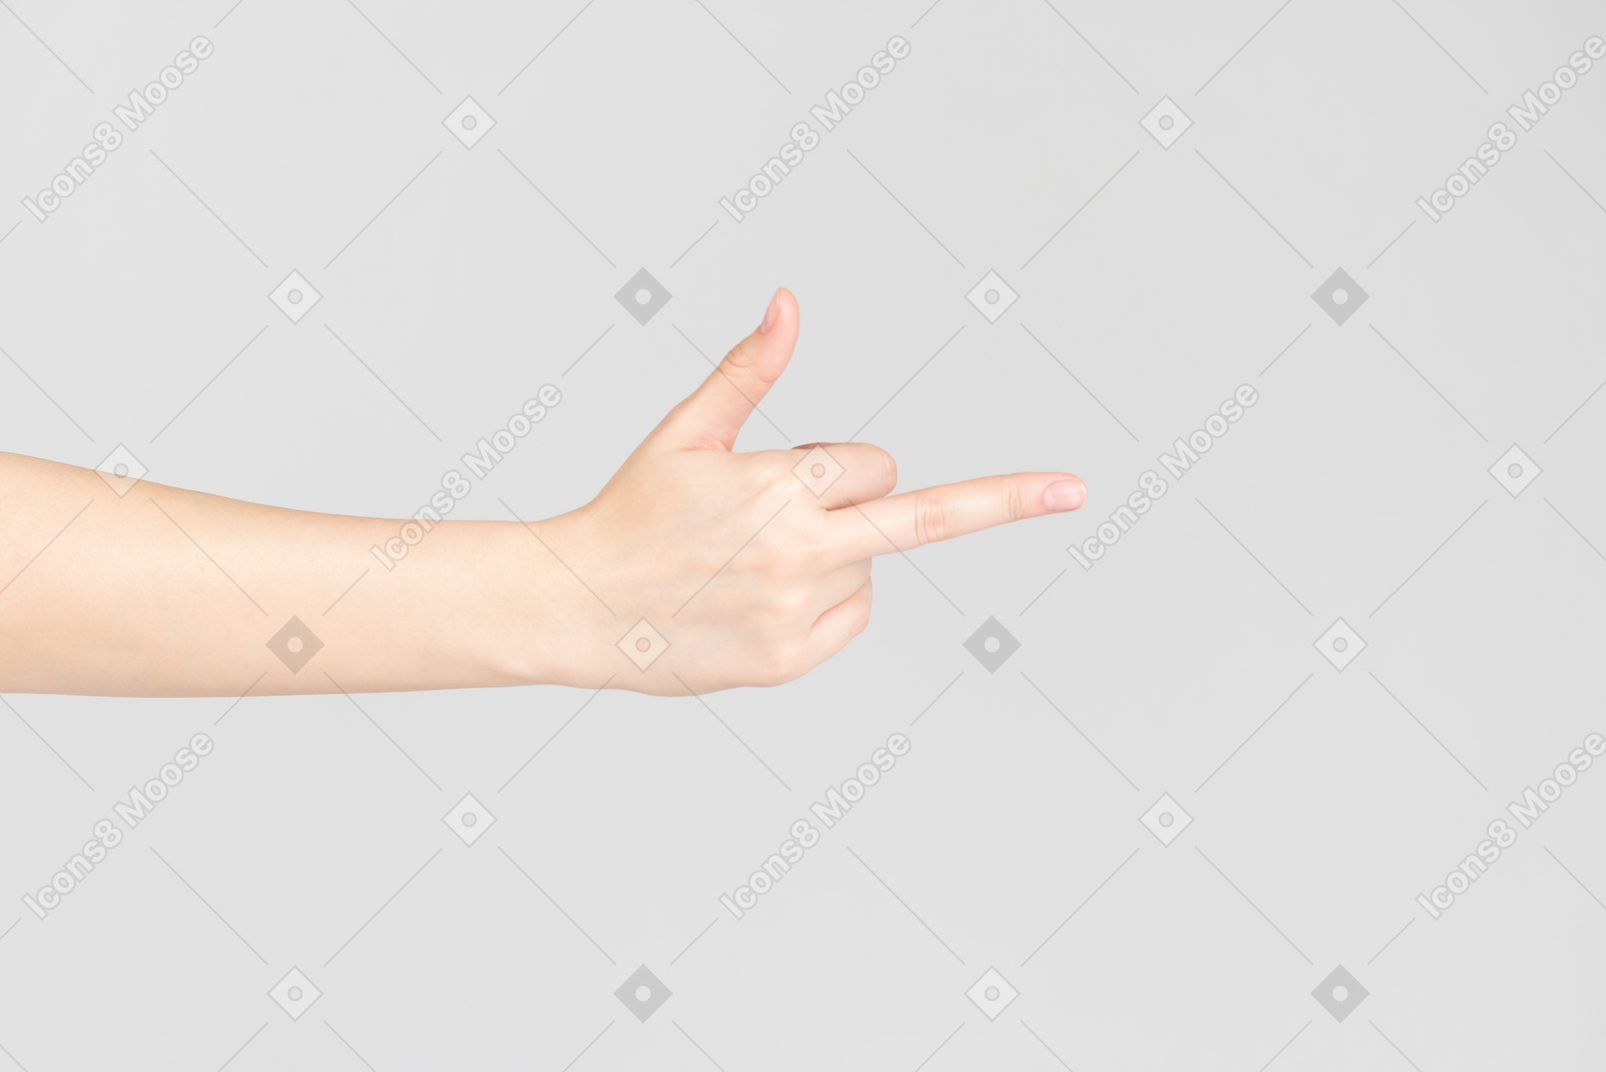 Mirada lateral de la mano femenina mostrando el dedo medio